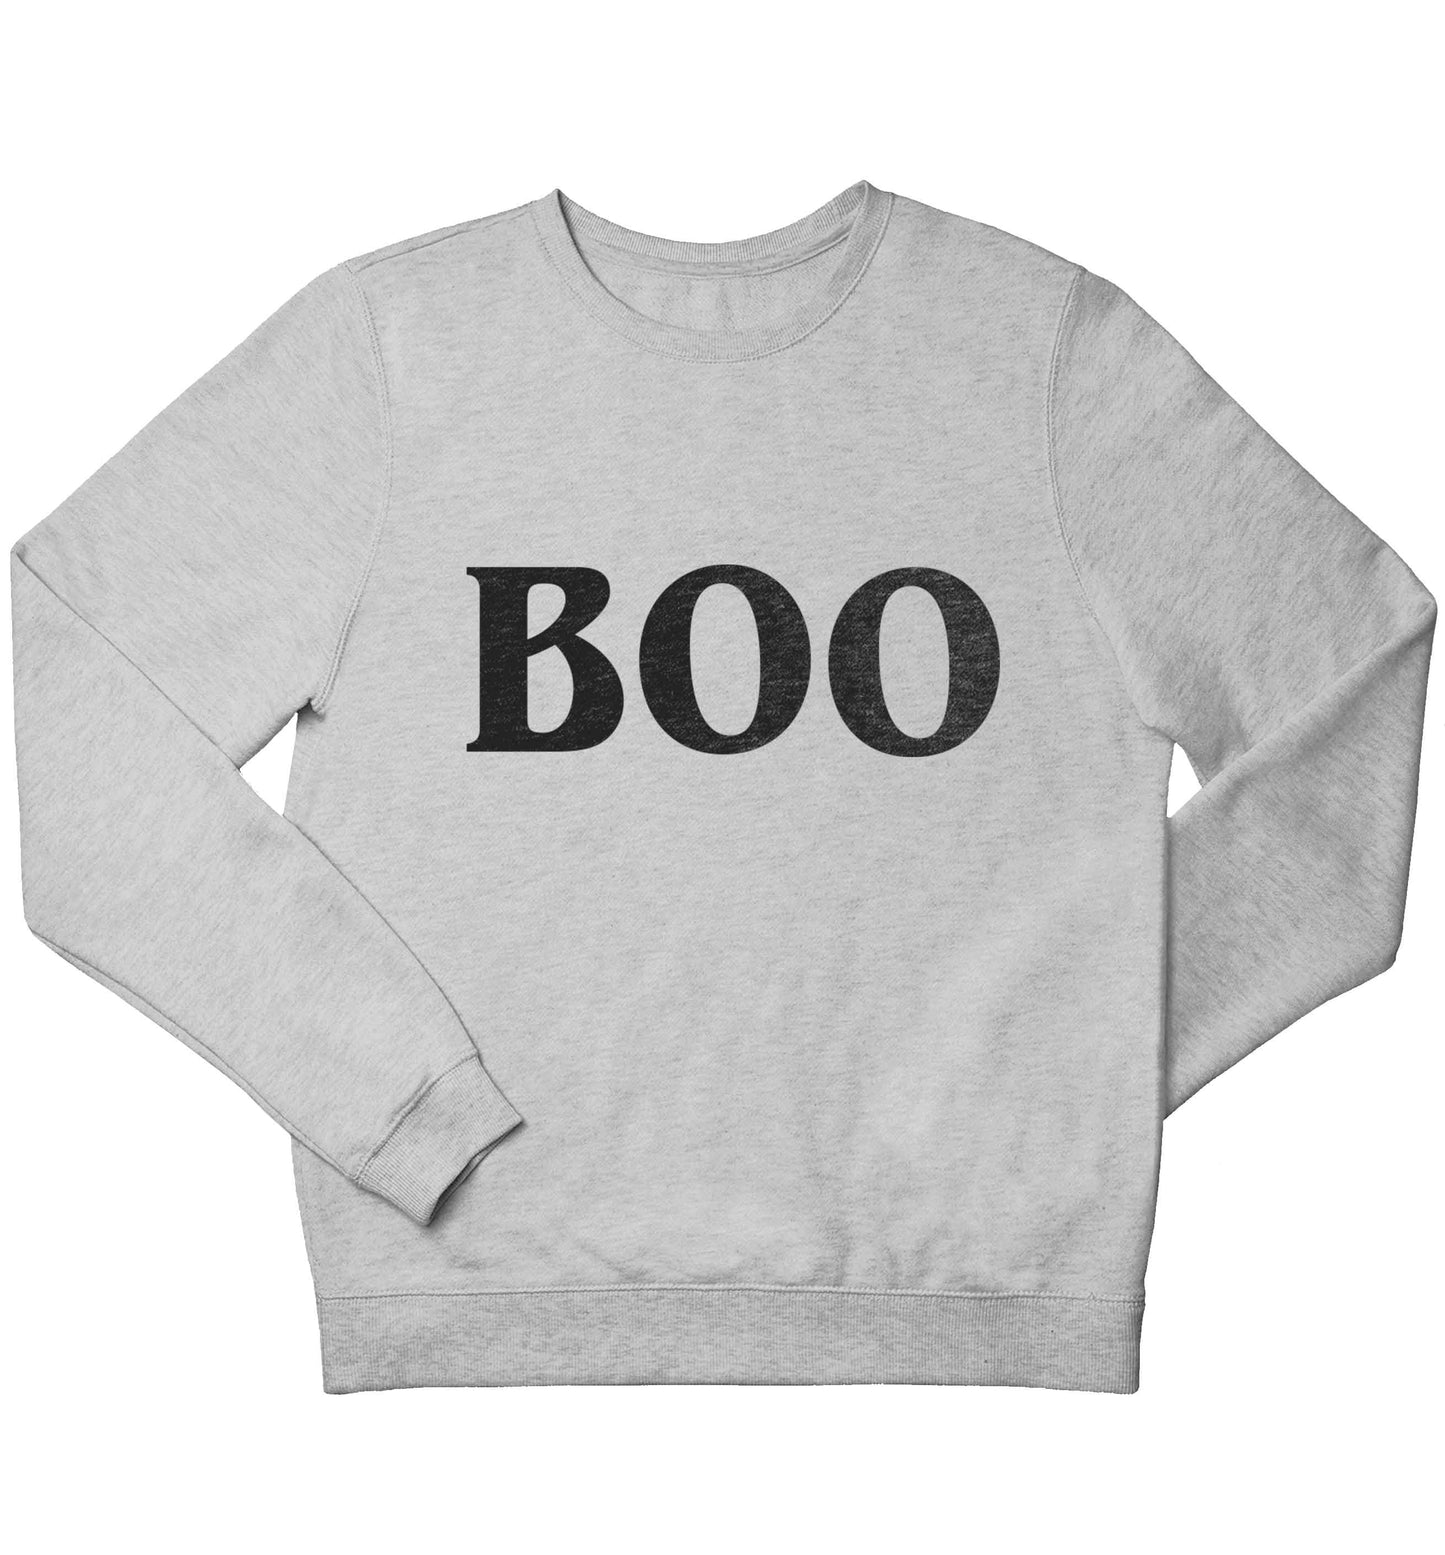 Boo children's grey sweater 12-13 Years